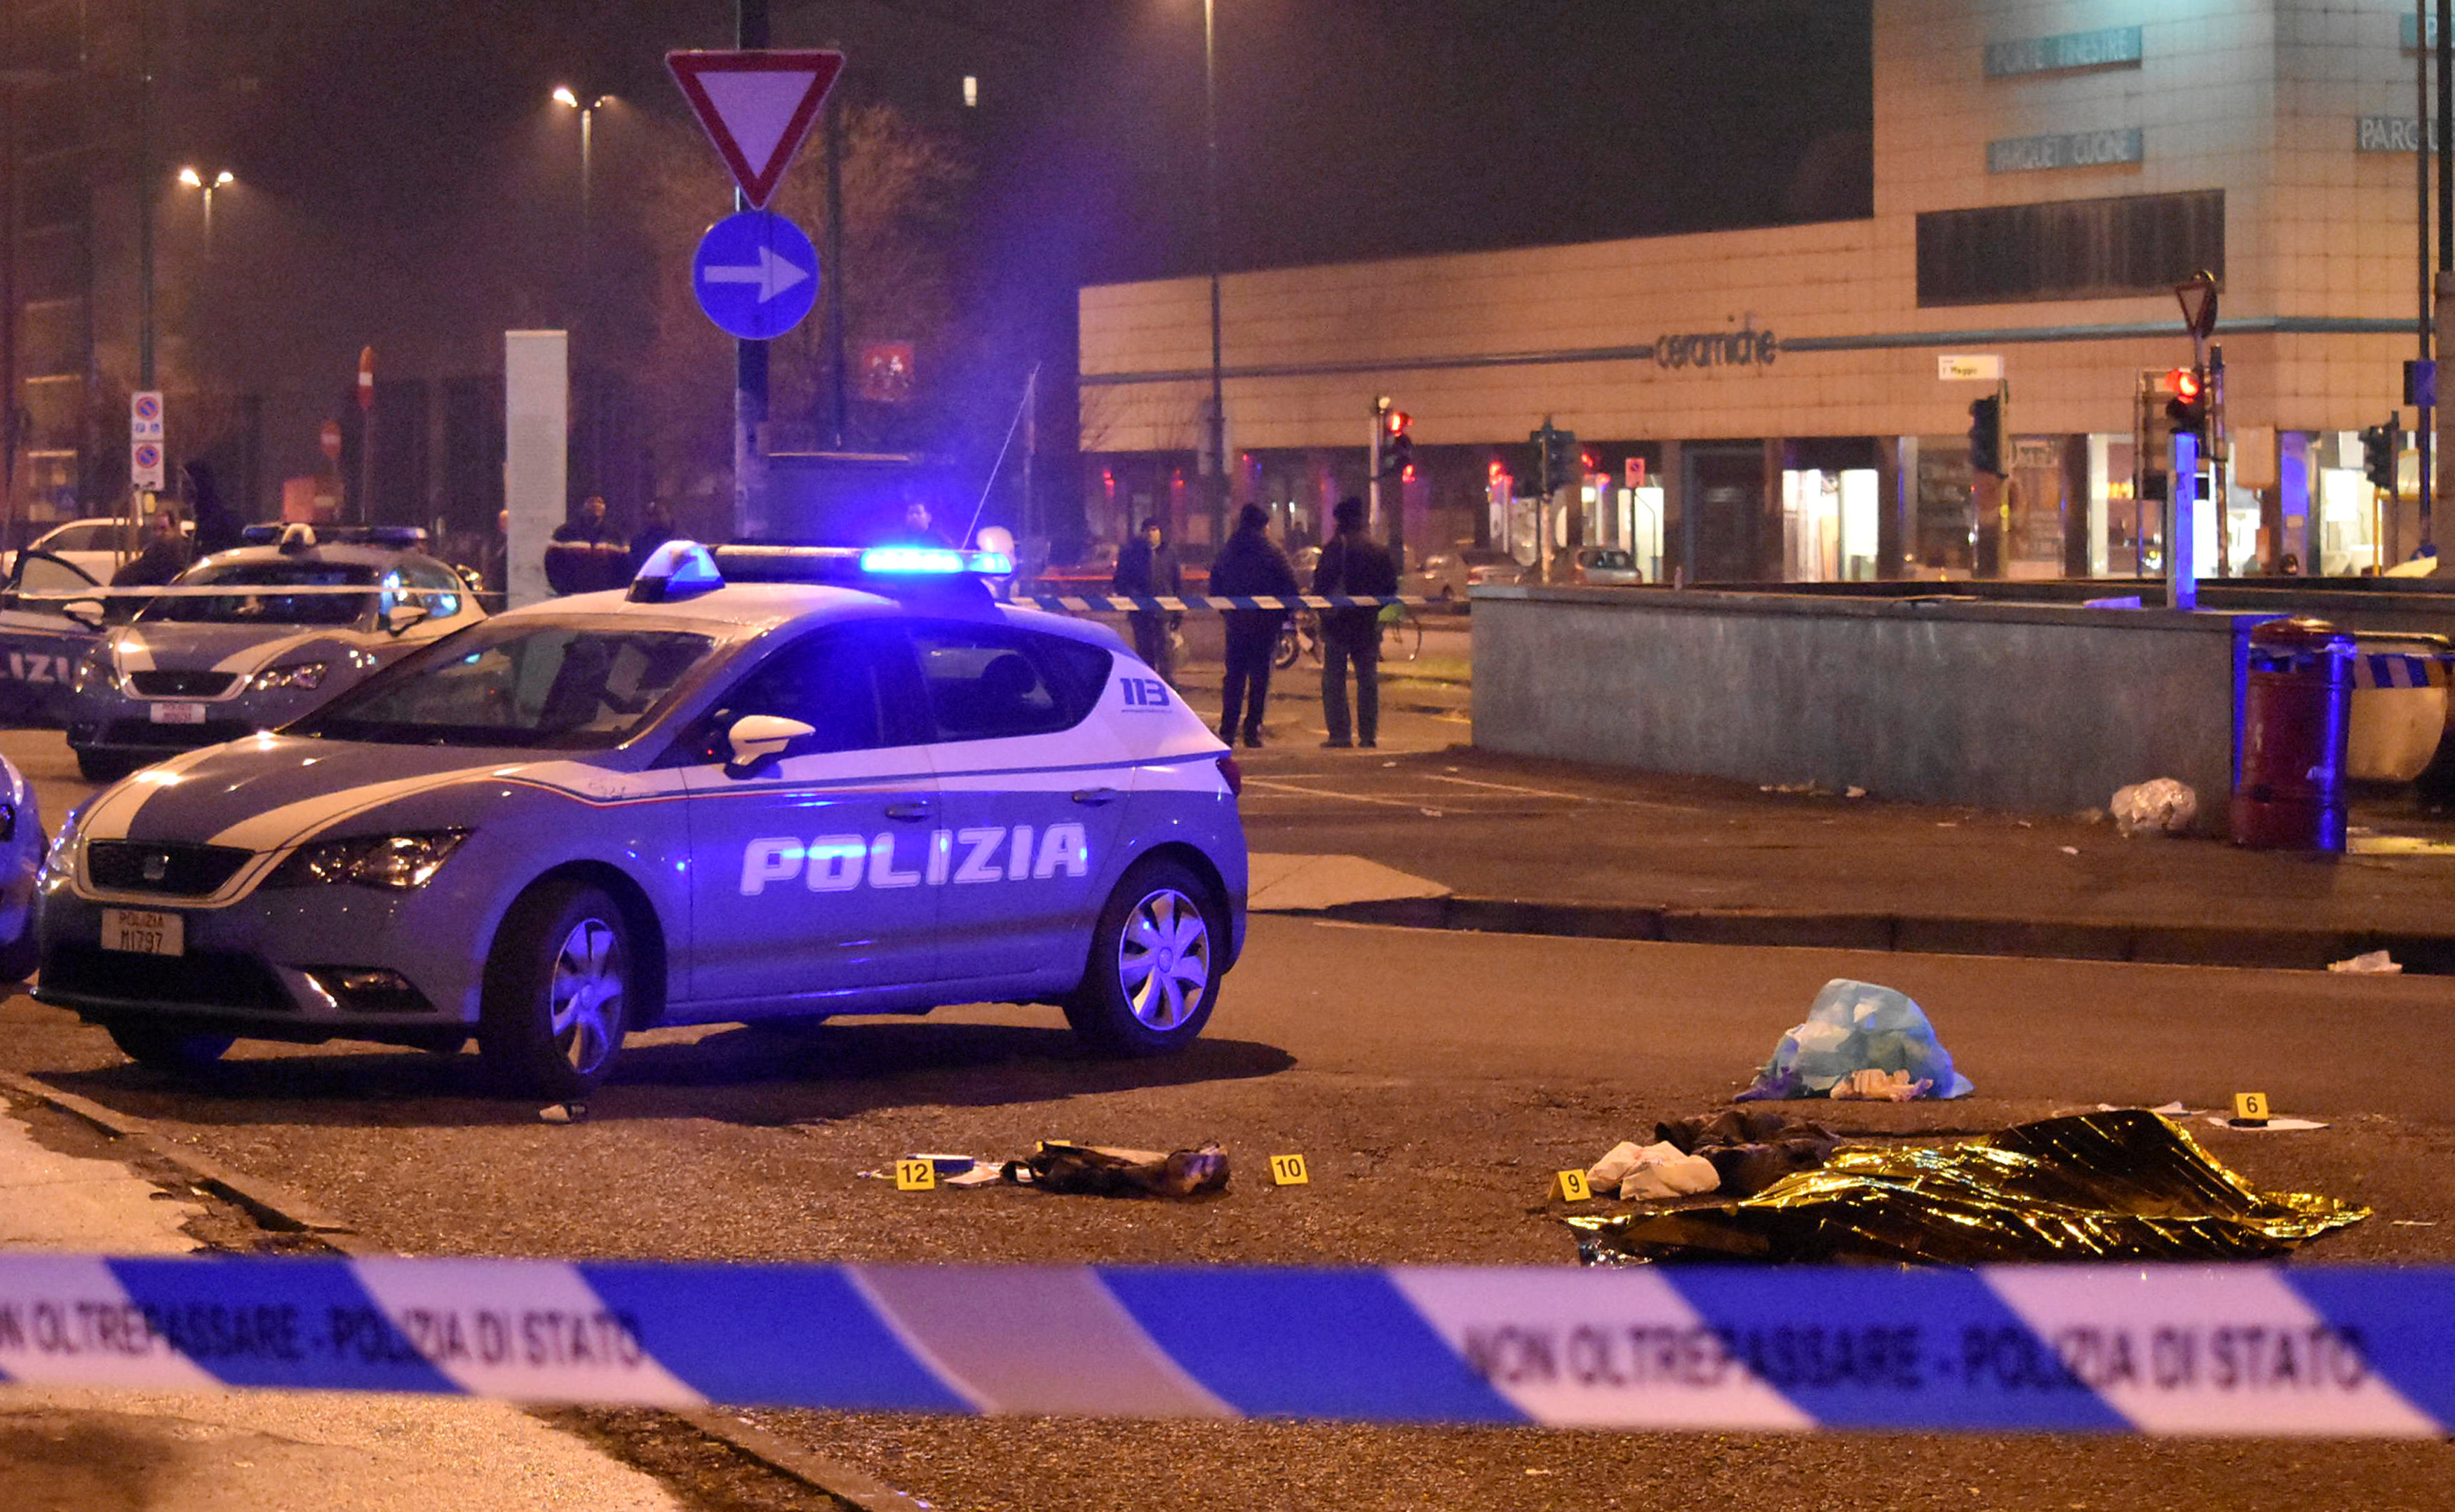 Italy police say had no idea Berlin truck attacker was in Milan